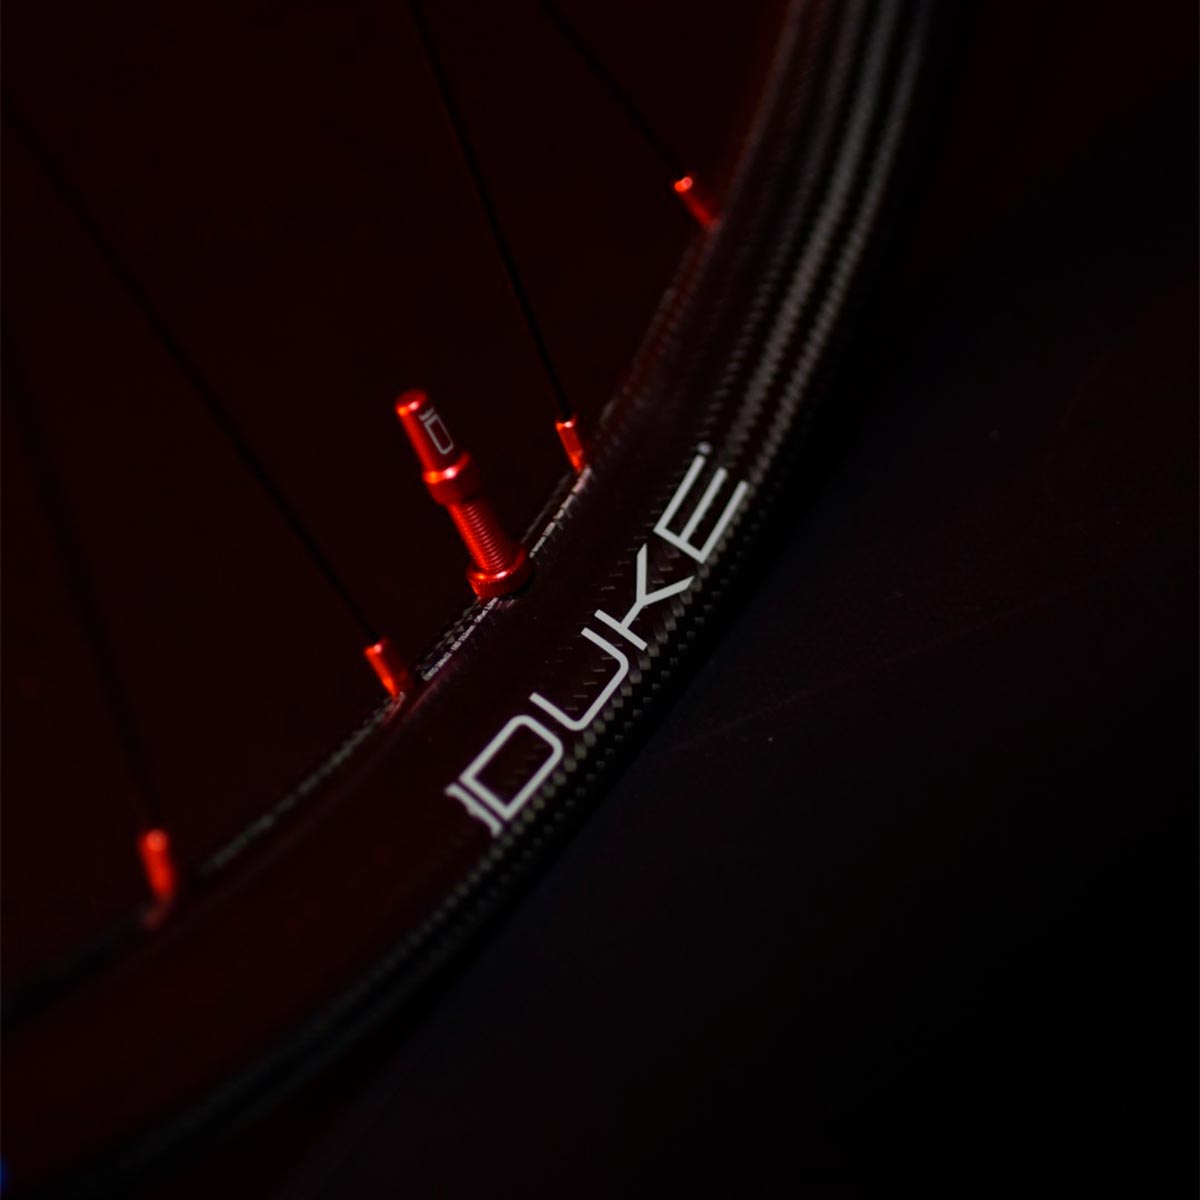 BikeSur Sport asume la distribución de las ruedas Duke Racing Wheels para España, Portugal y Andorra